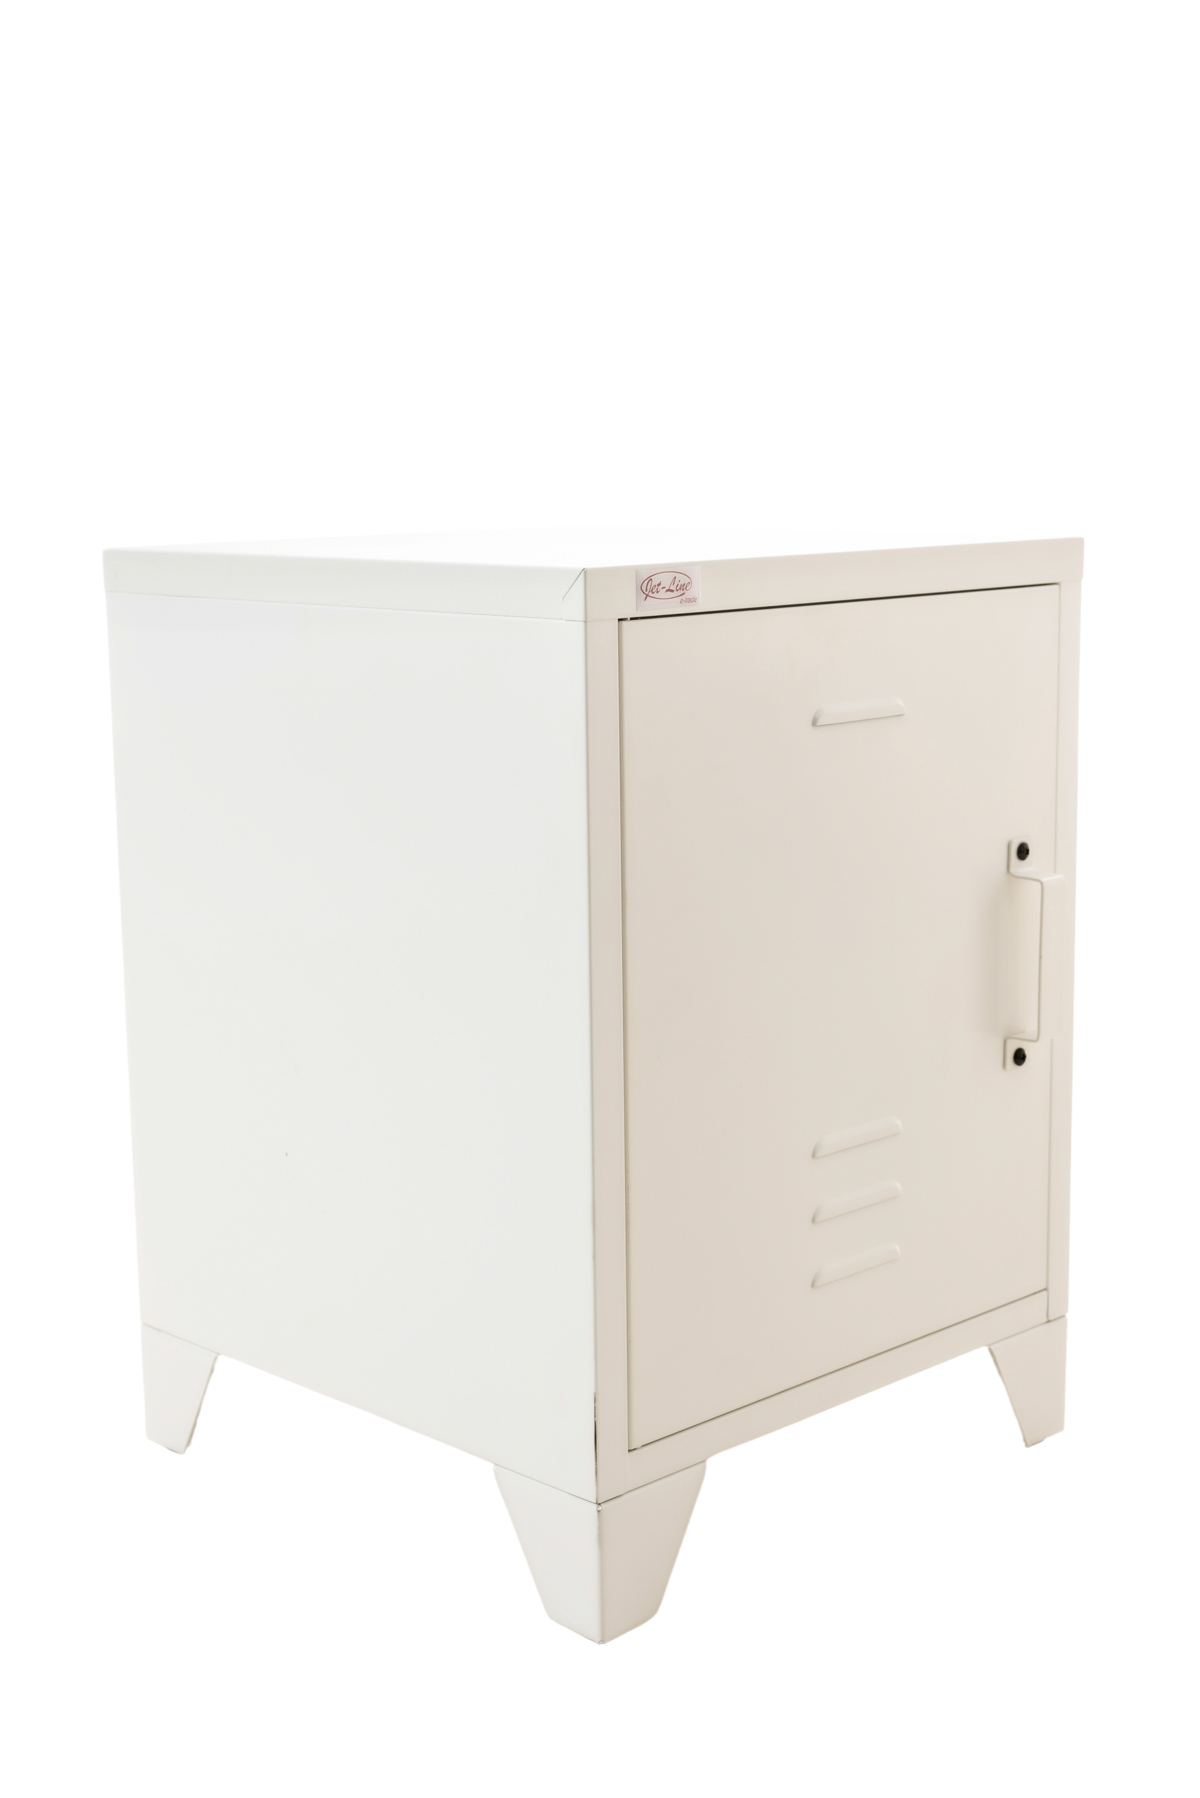 Steel Office-Cabinet MINSKOW locker 1 door white